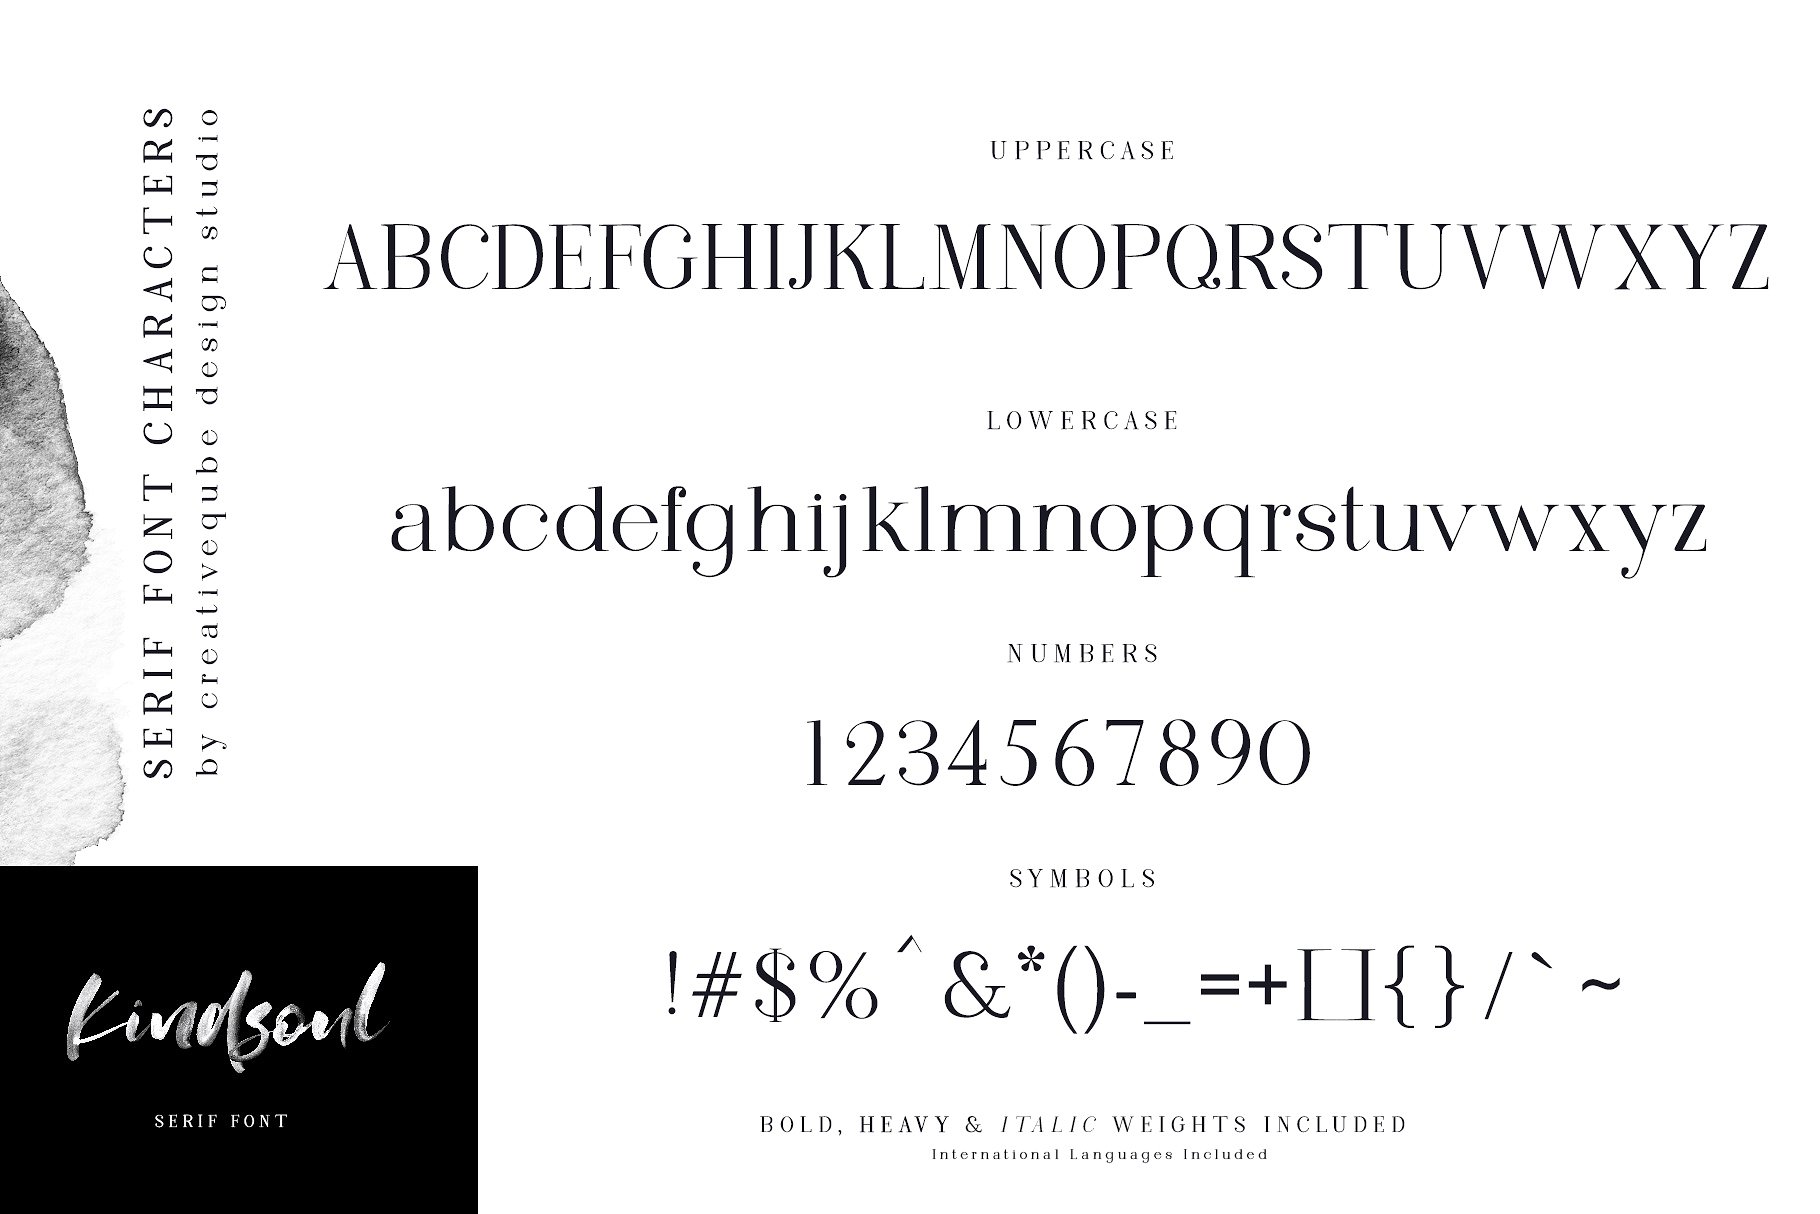 手绘水彩SVG字体&平滑衬线英文字体 KindSoul SVG Script & Serif Font Duo插图10